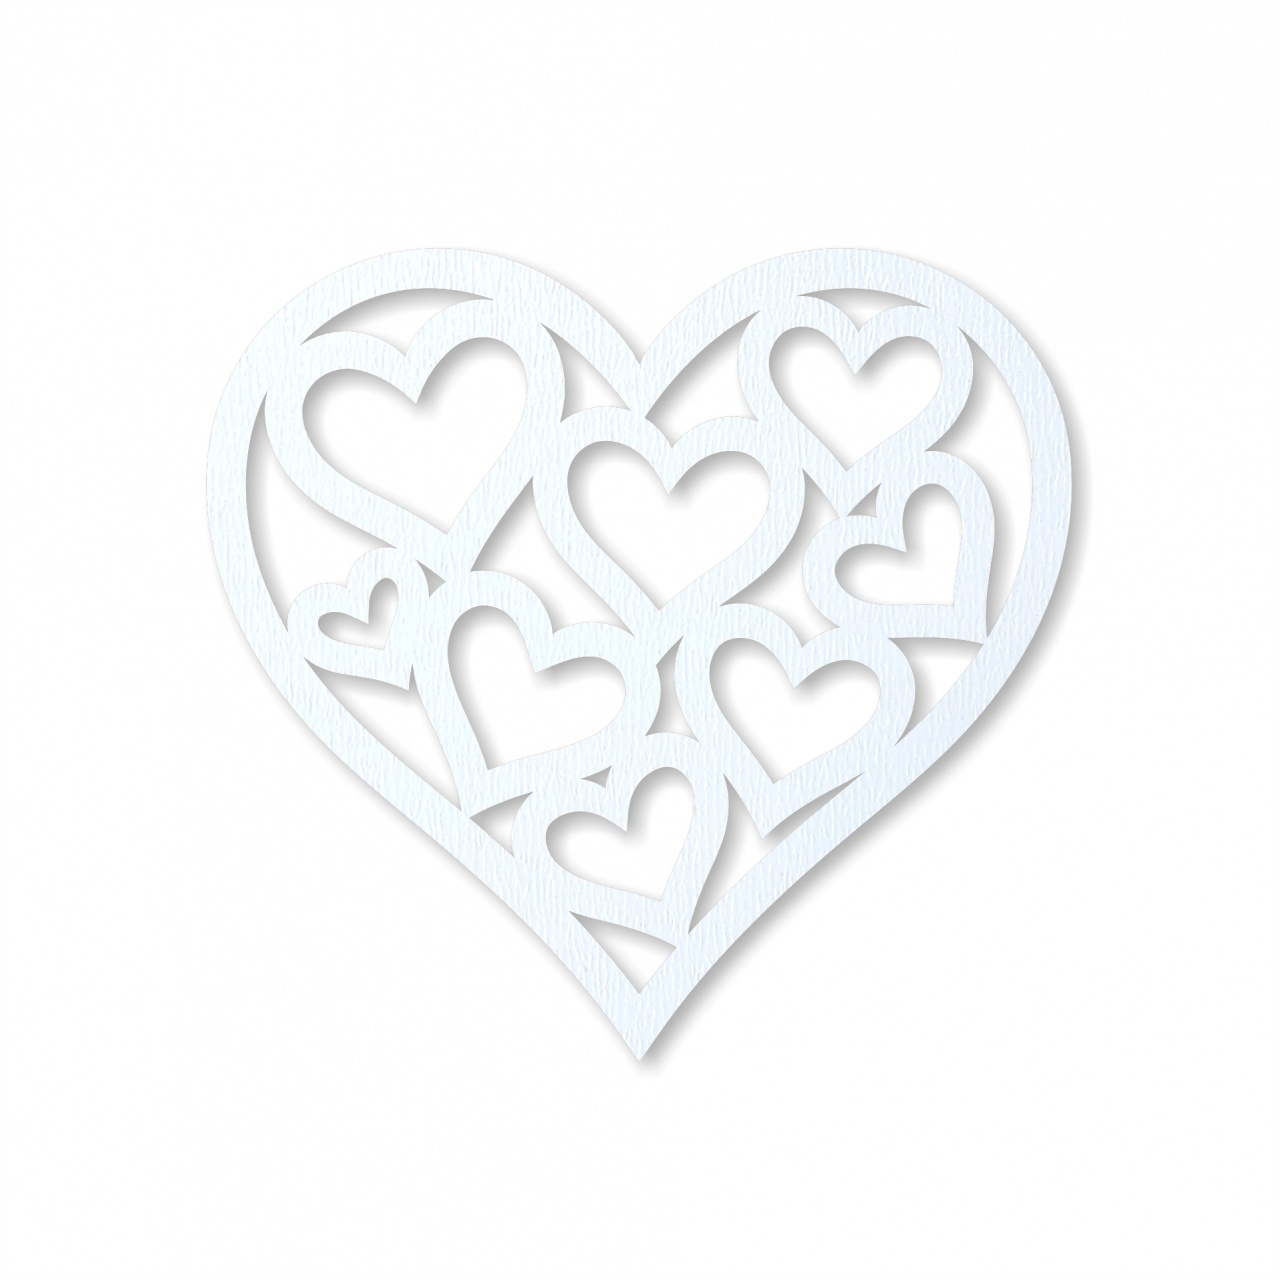 Inimă cu inimioare, 14×13 cm, MDF alb :: 14 cm